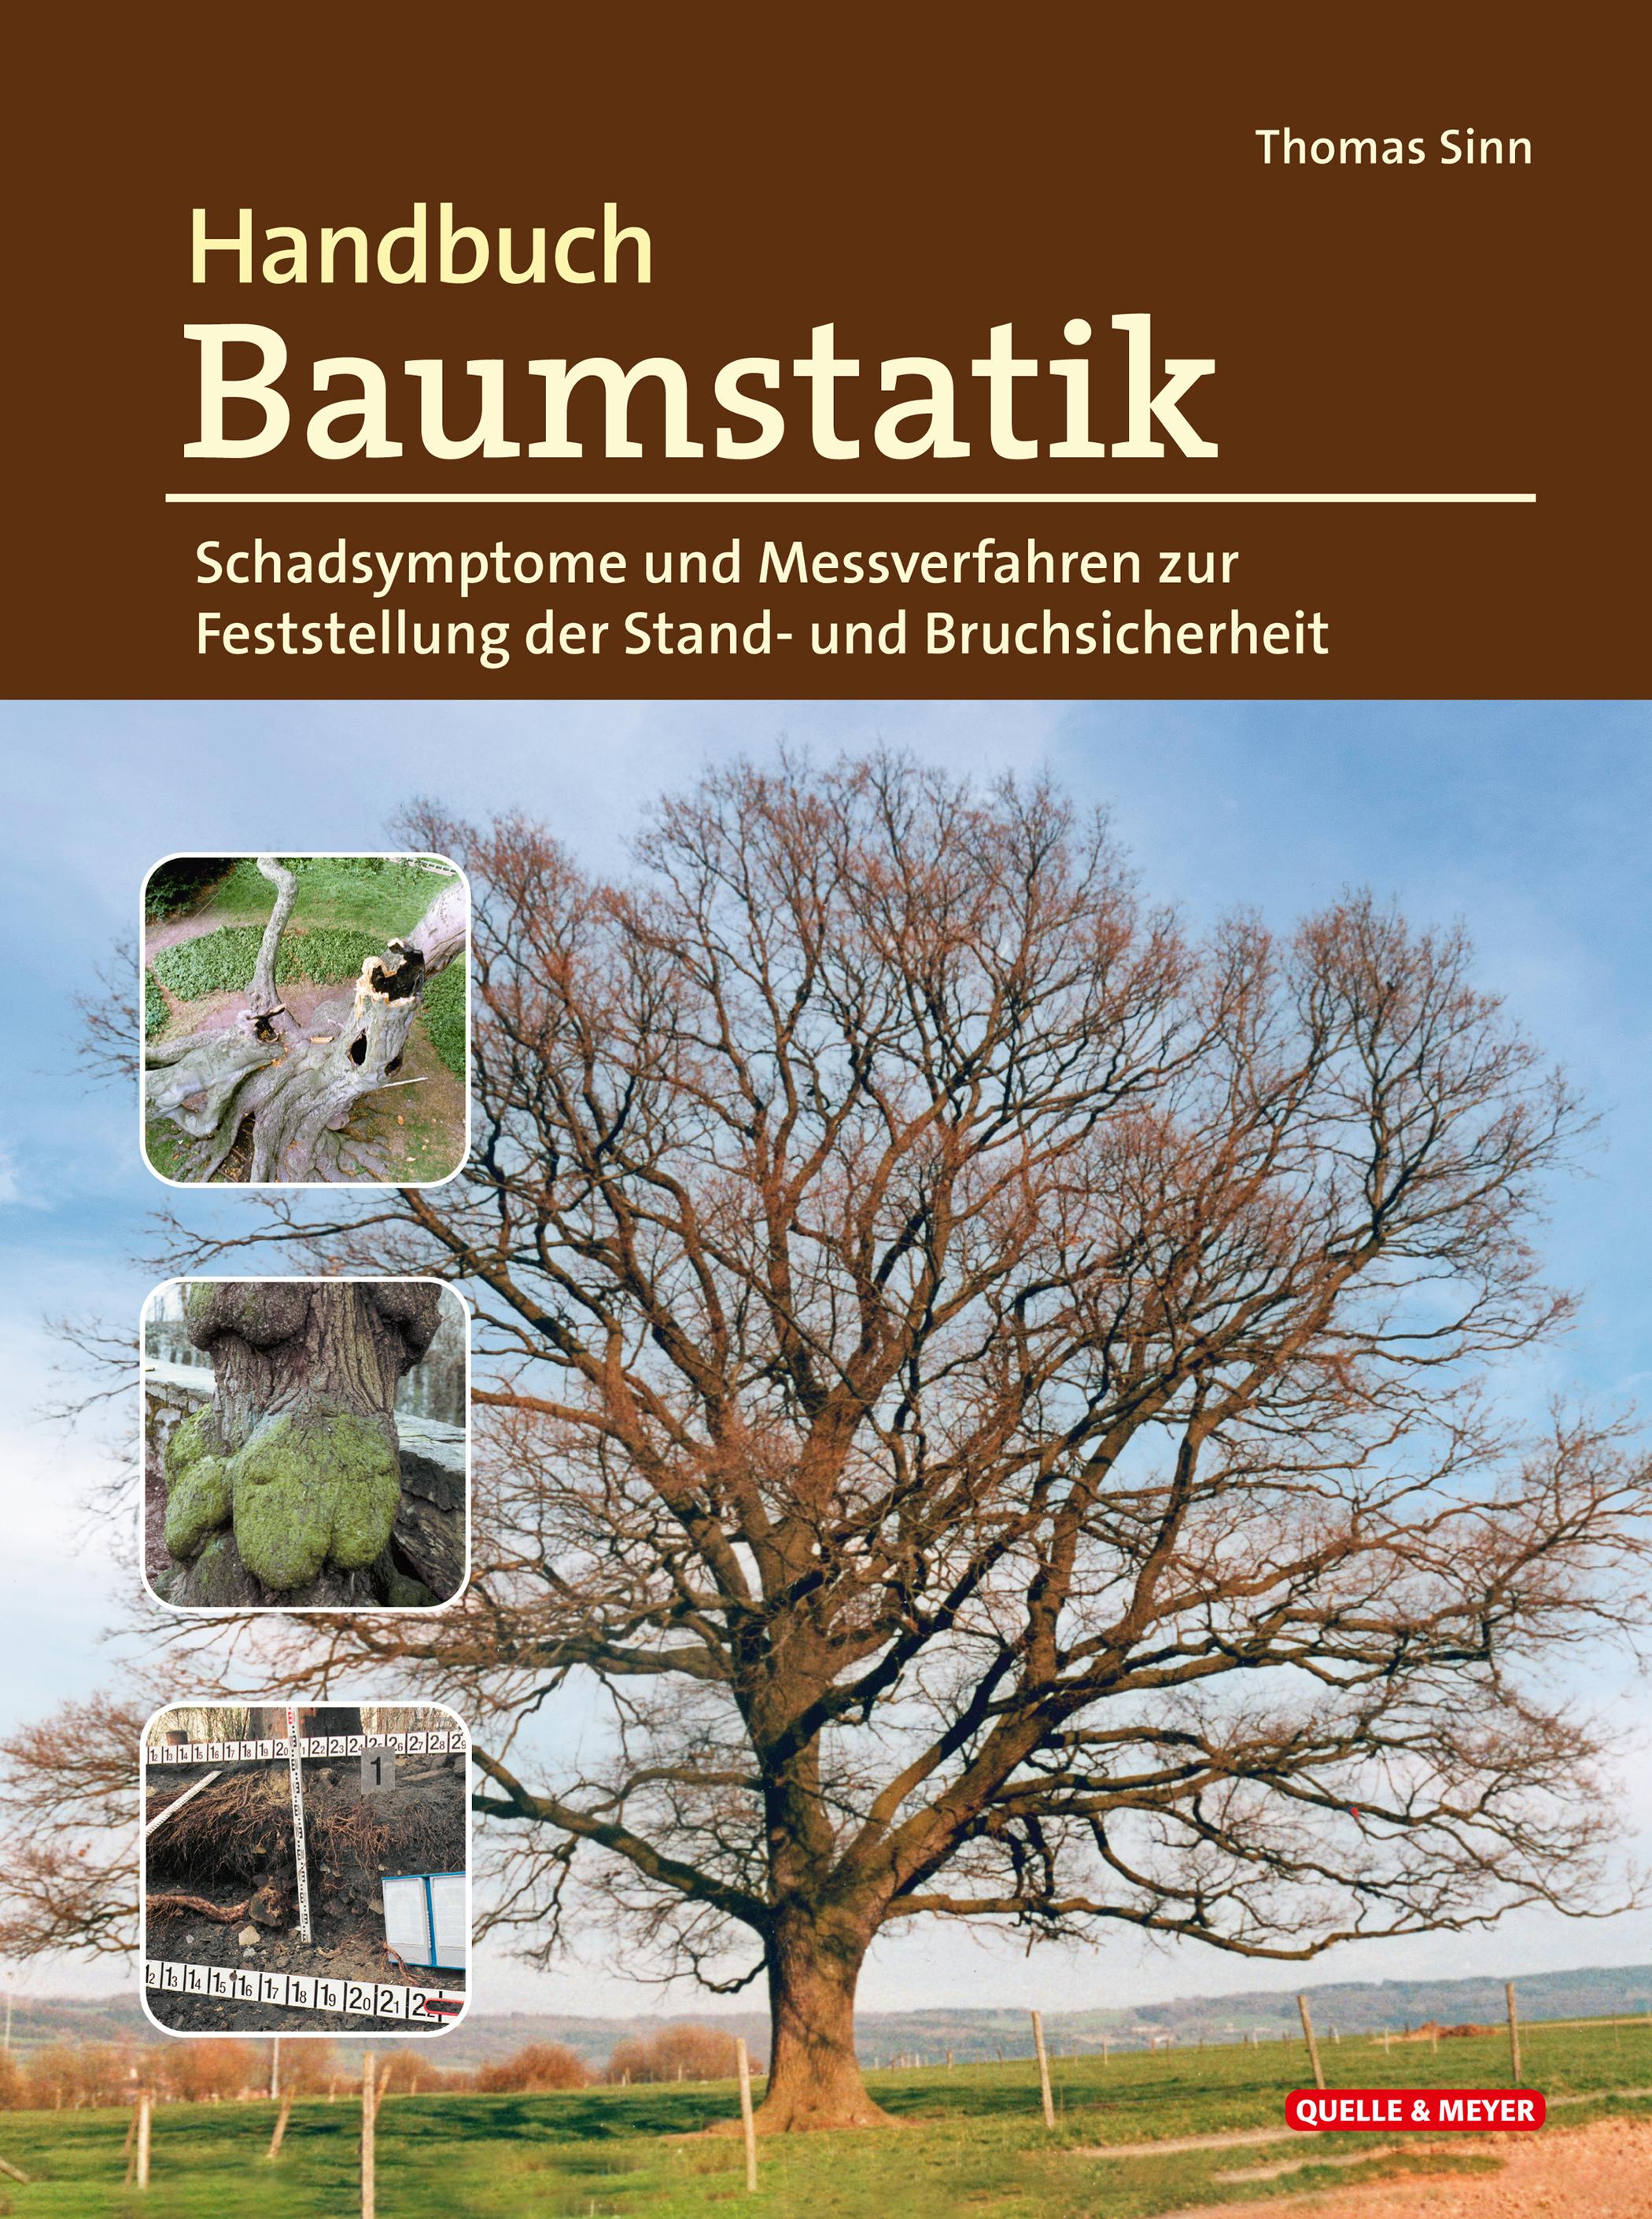 Handbuch Baumstatik Schadsymptome und Messverfahren zur Feststellung der Stand- und Bruchsicherheit